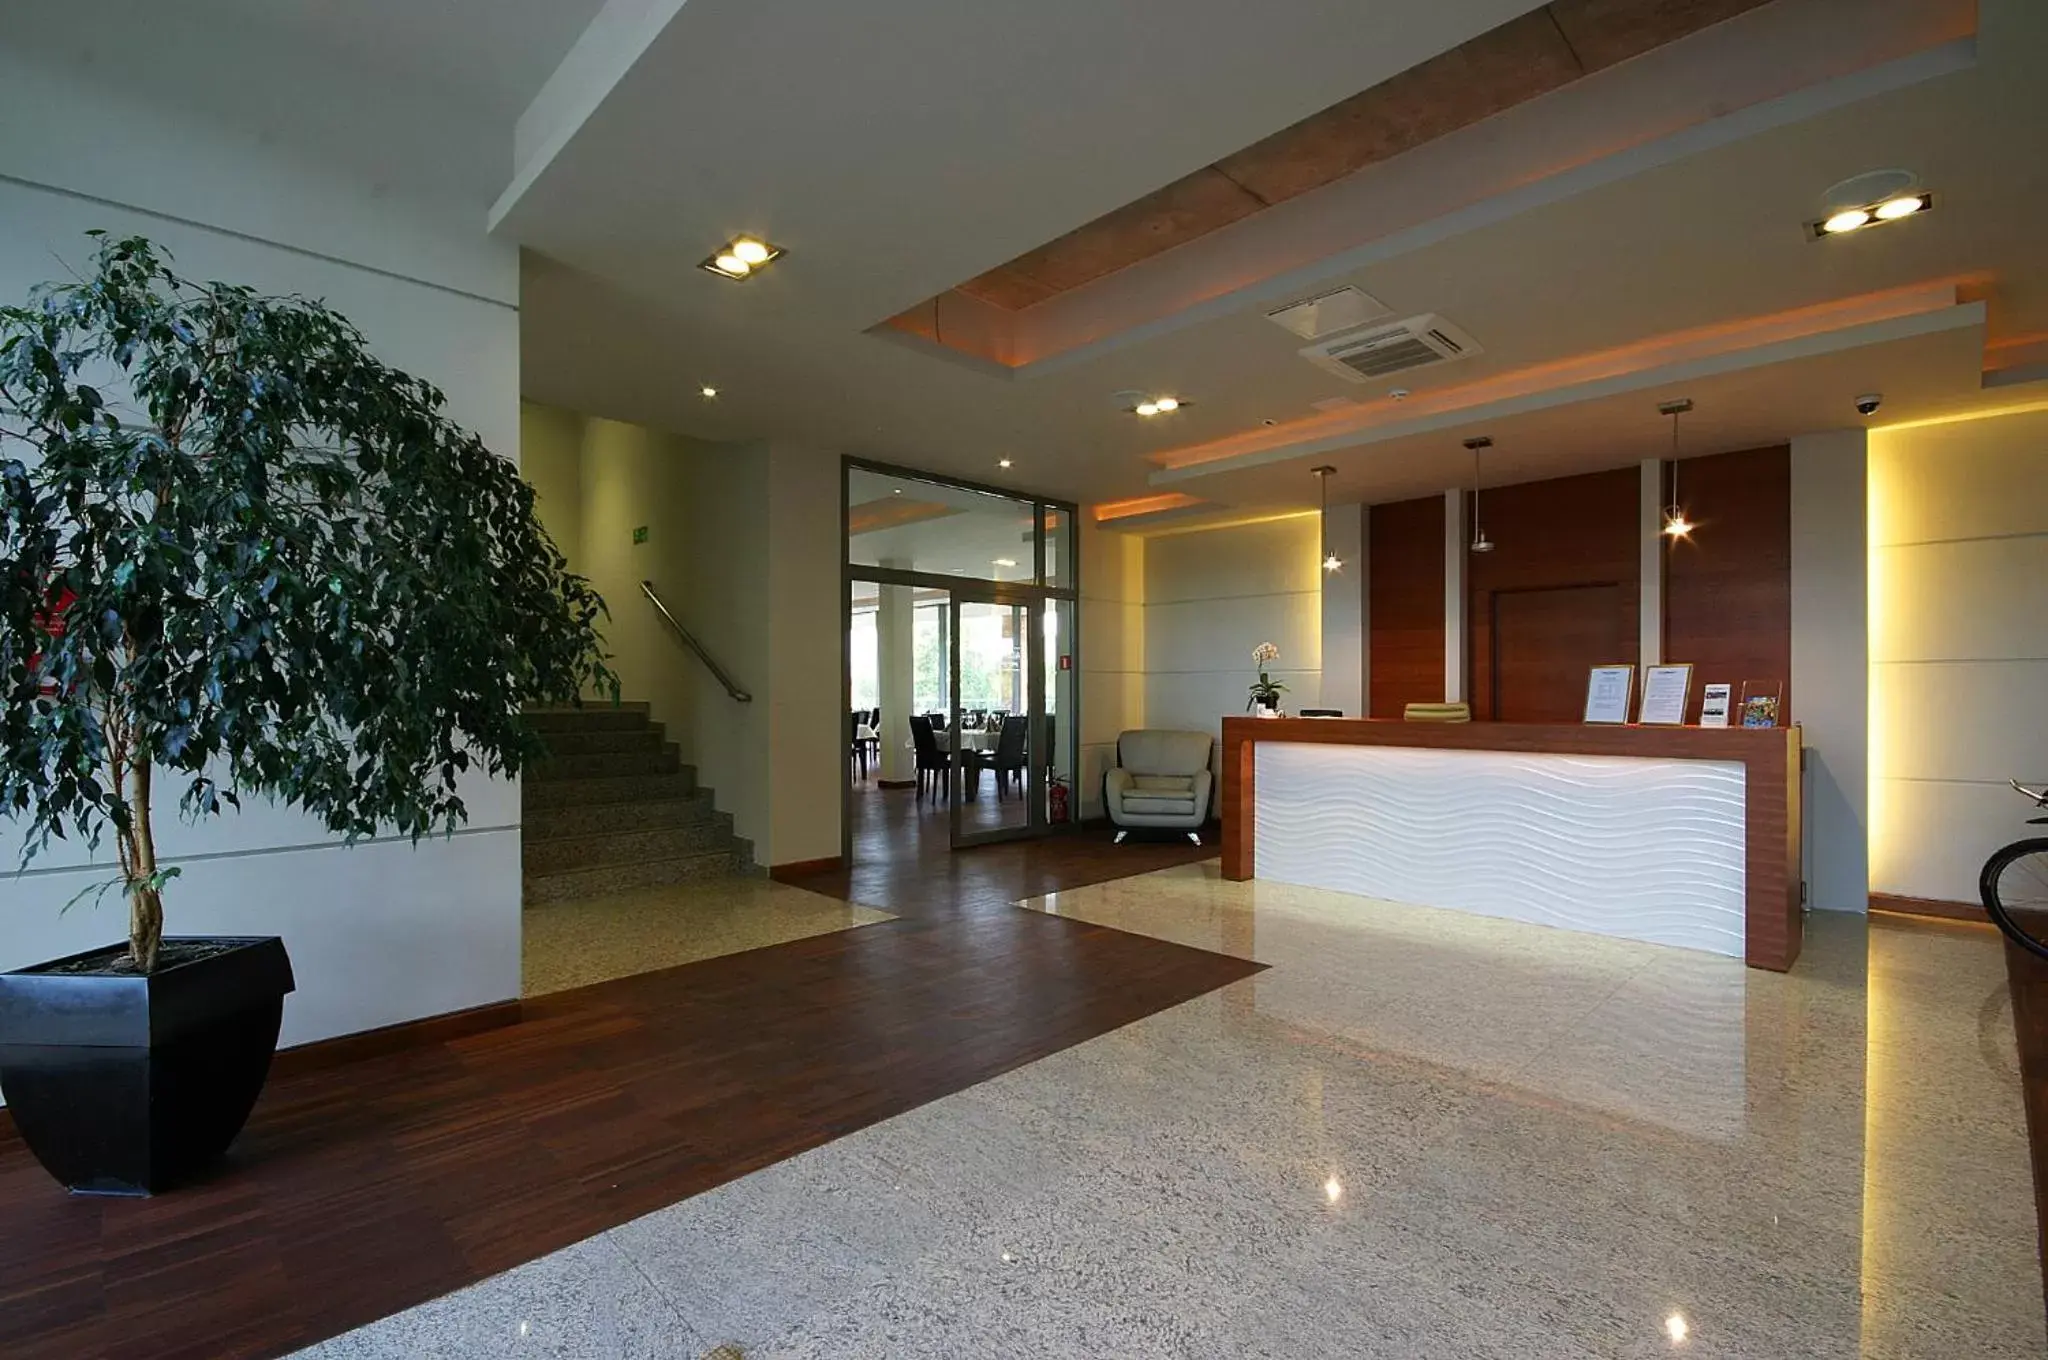 Lobby or reception, Lobby/Reception in Hotel Moran & SPA